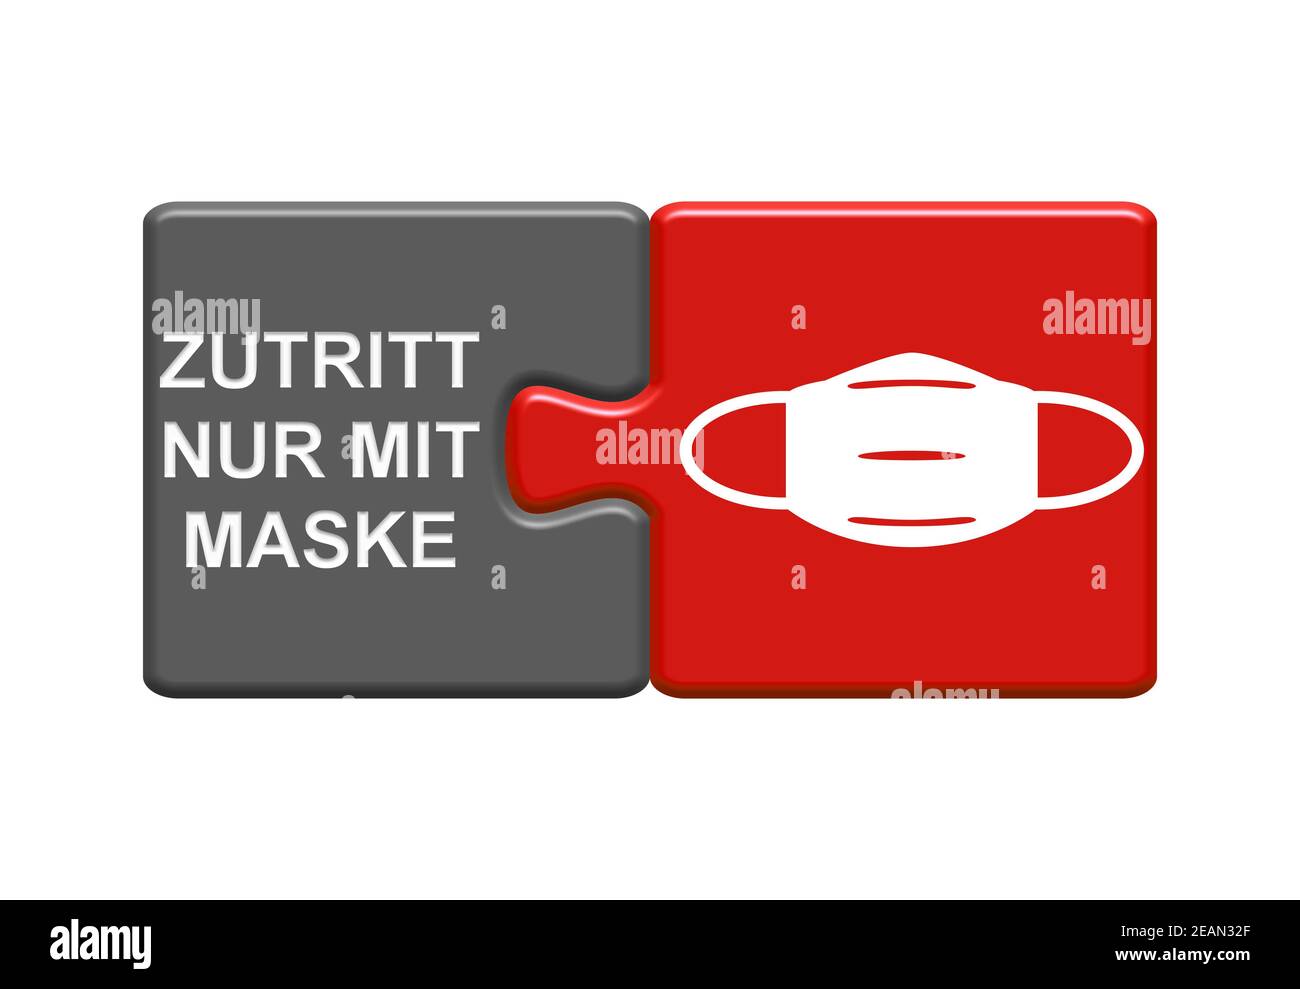 Accès uniquement avec masque en allemand - rouge Illustration 3D grise Banque D'Images